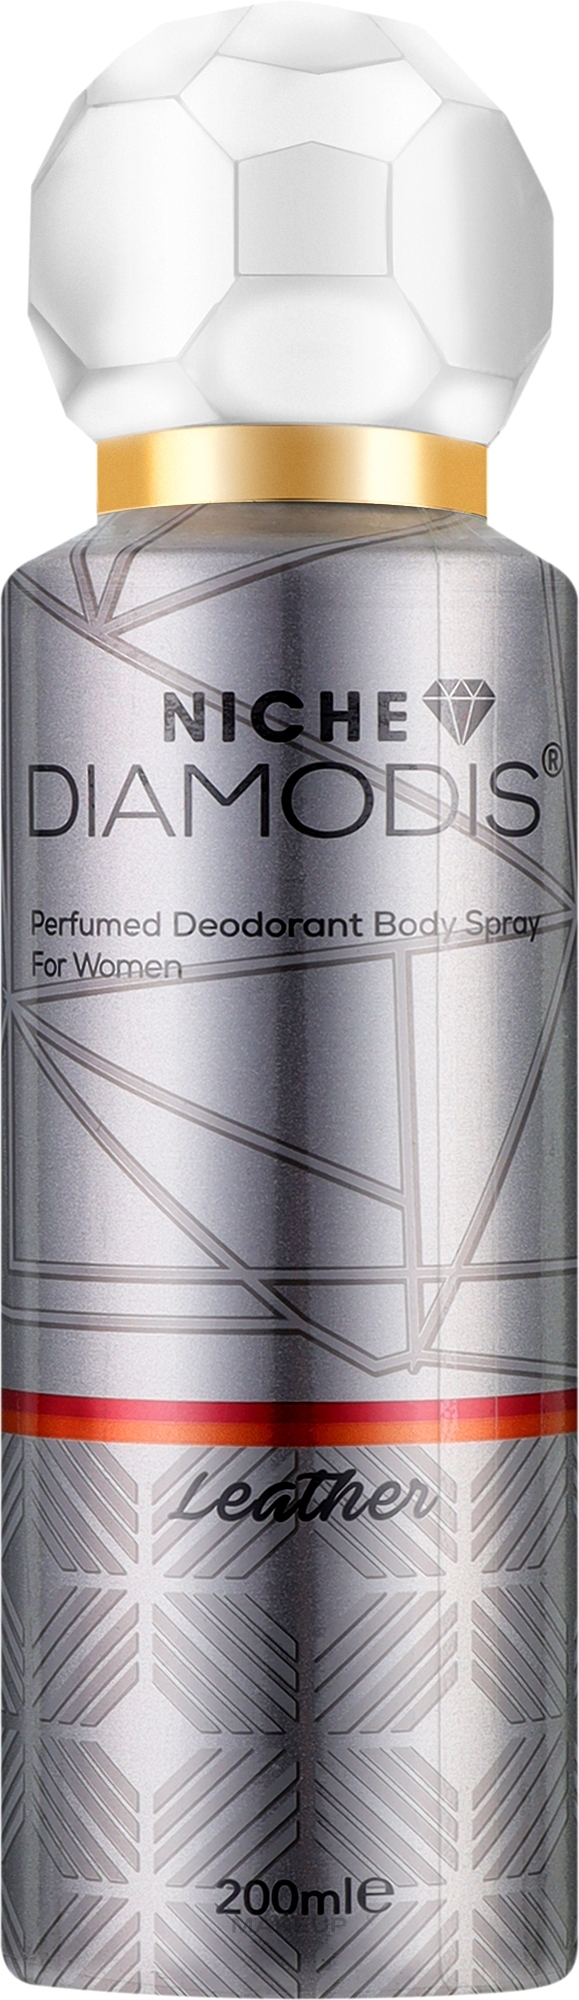 Нішевий дезодорант для тіла - Niche Diamodis Leather Perfumed Deodorant Body Spray — фото 200ml